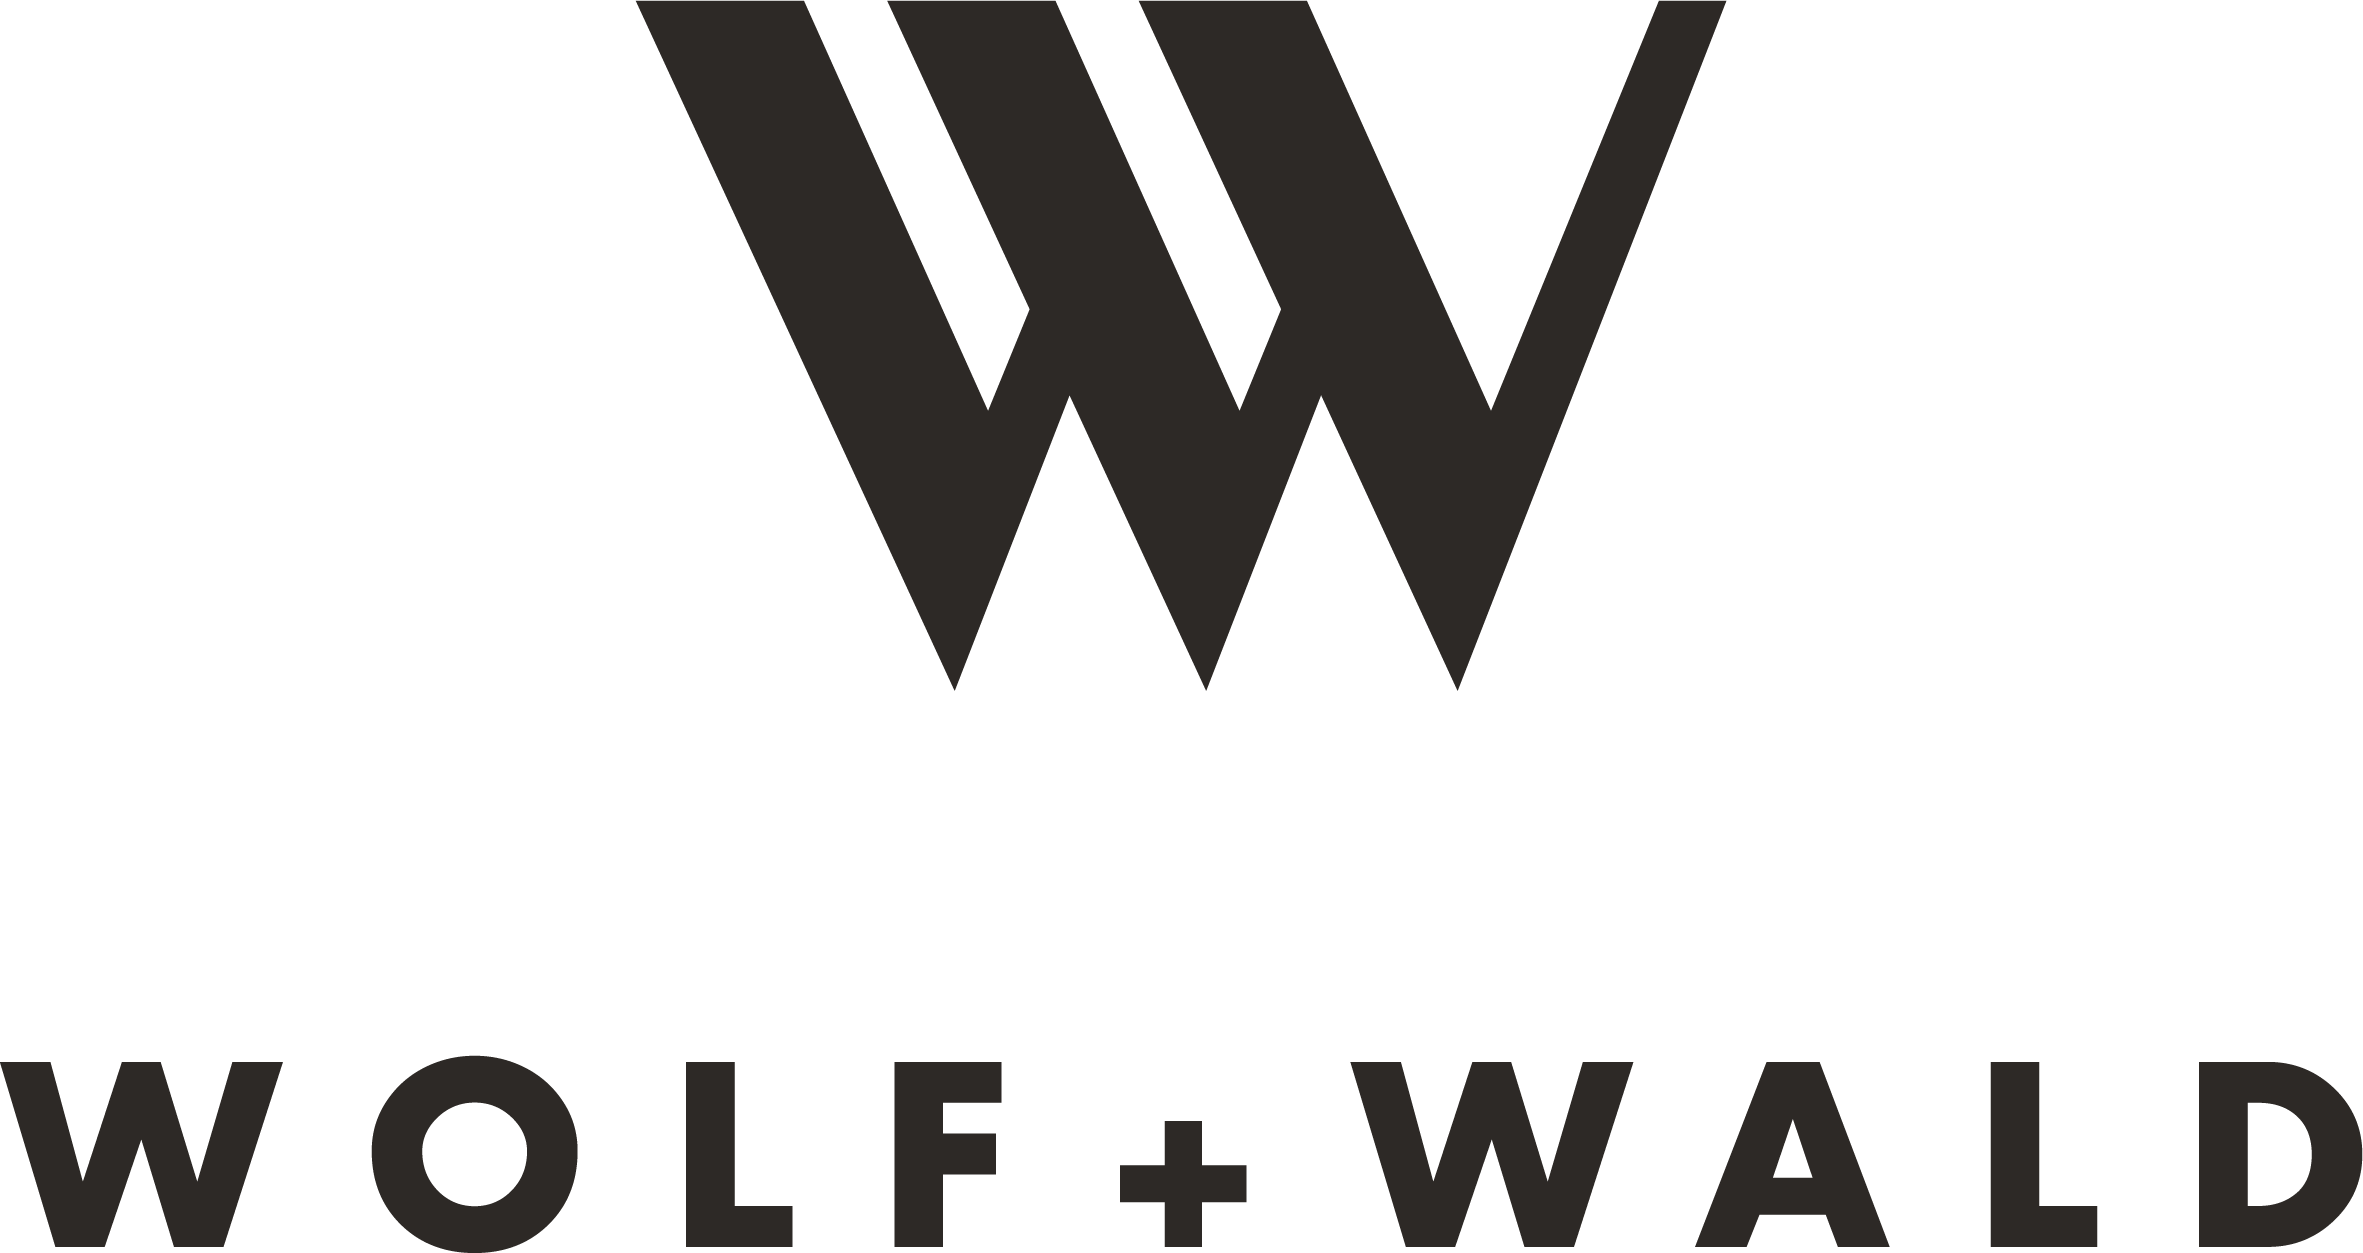 WOLF + WALD